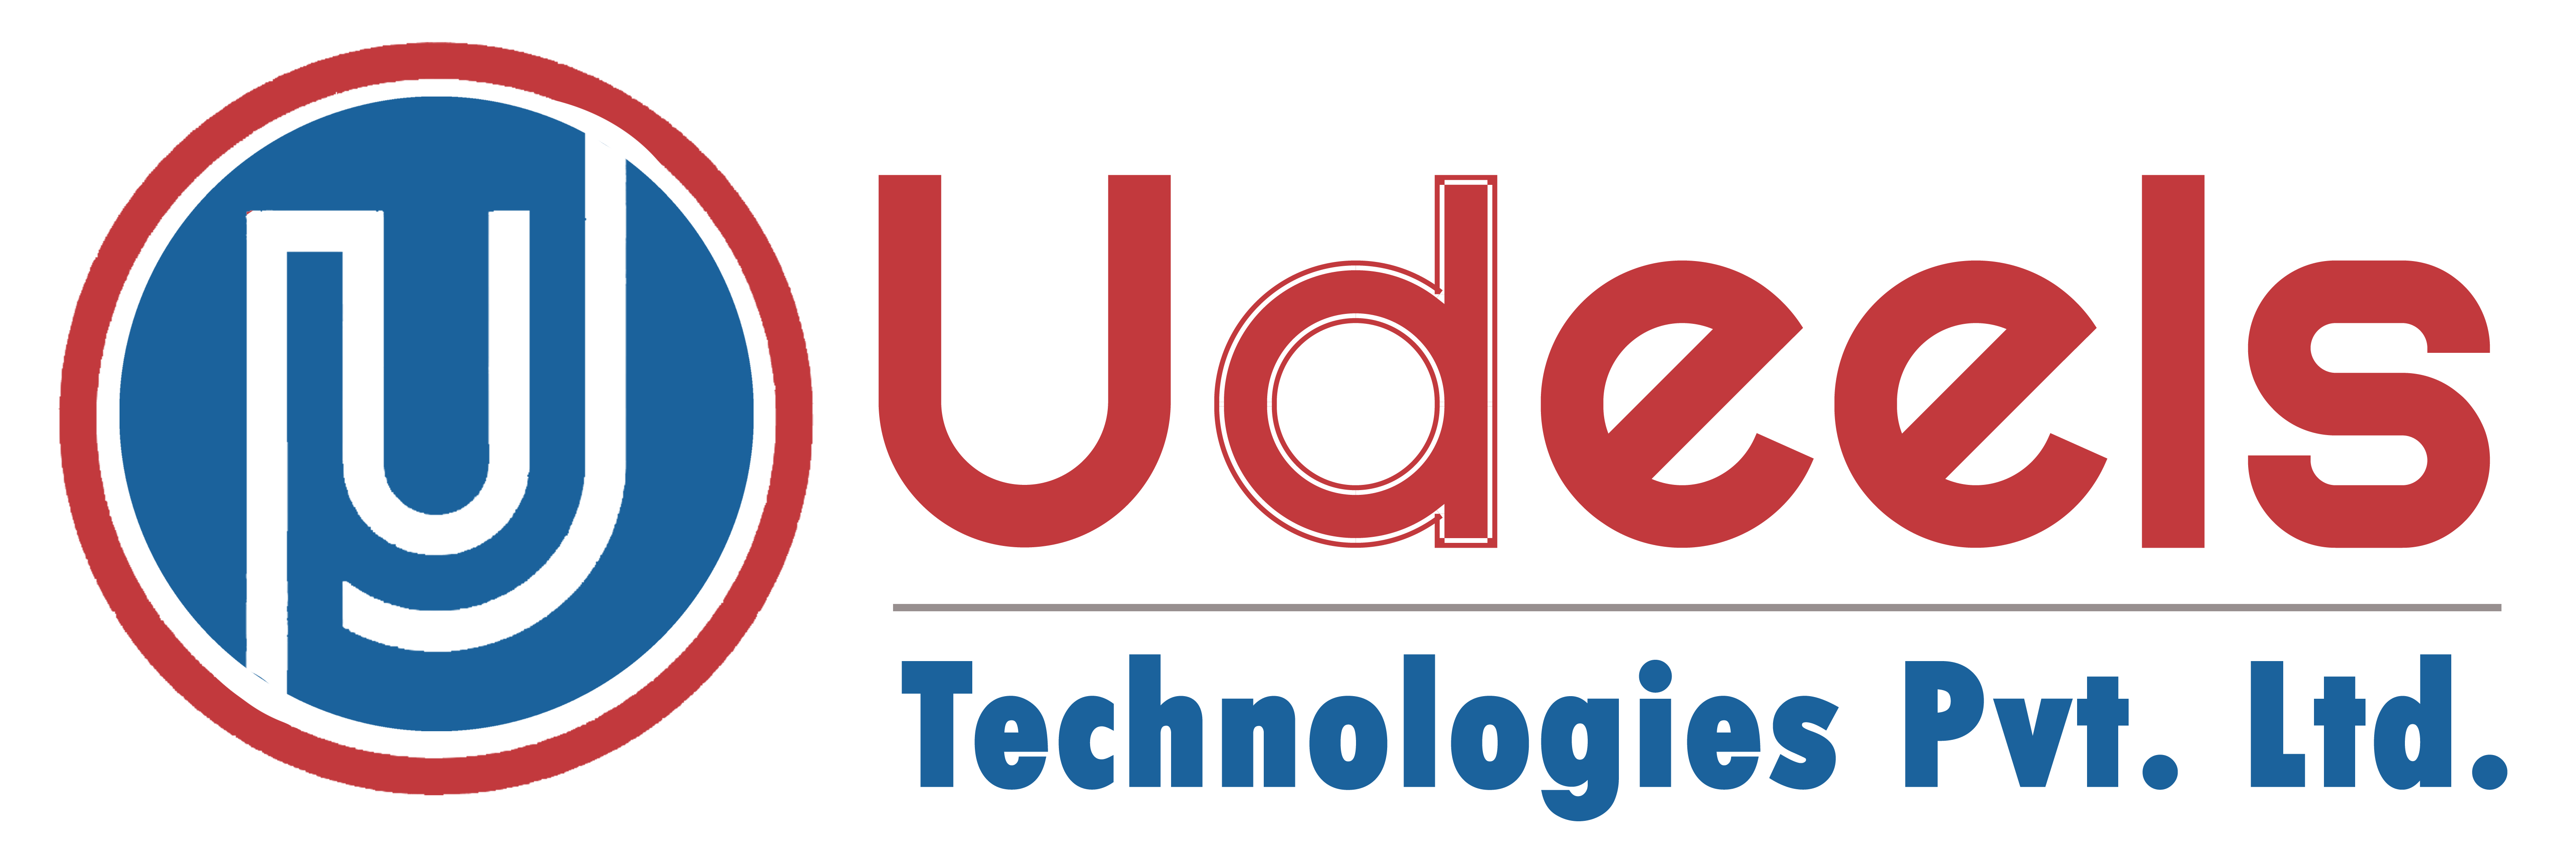 Udeels footer logo